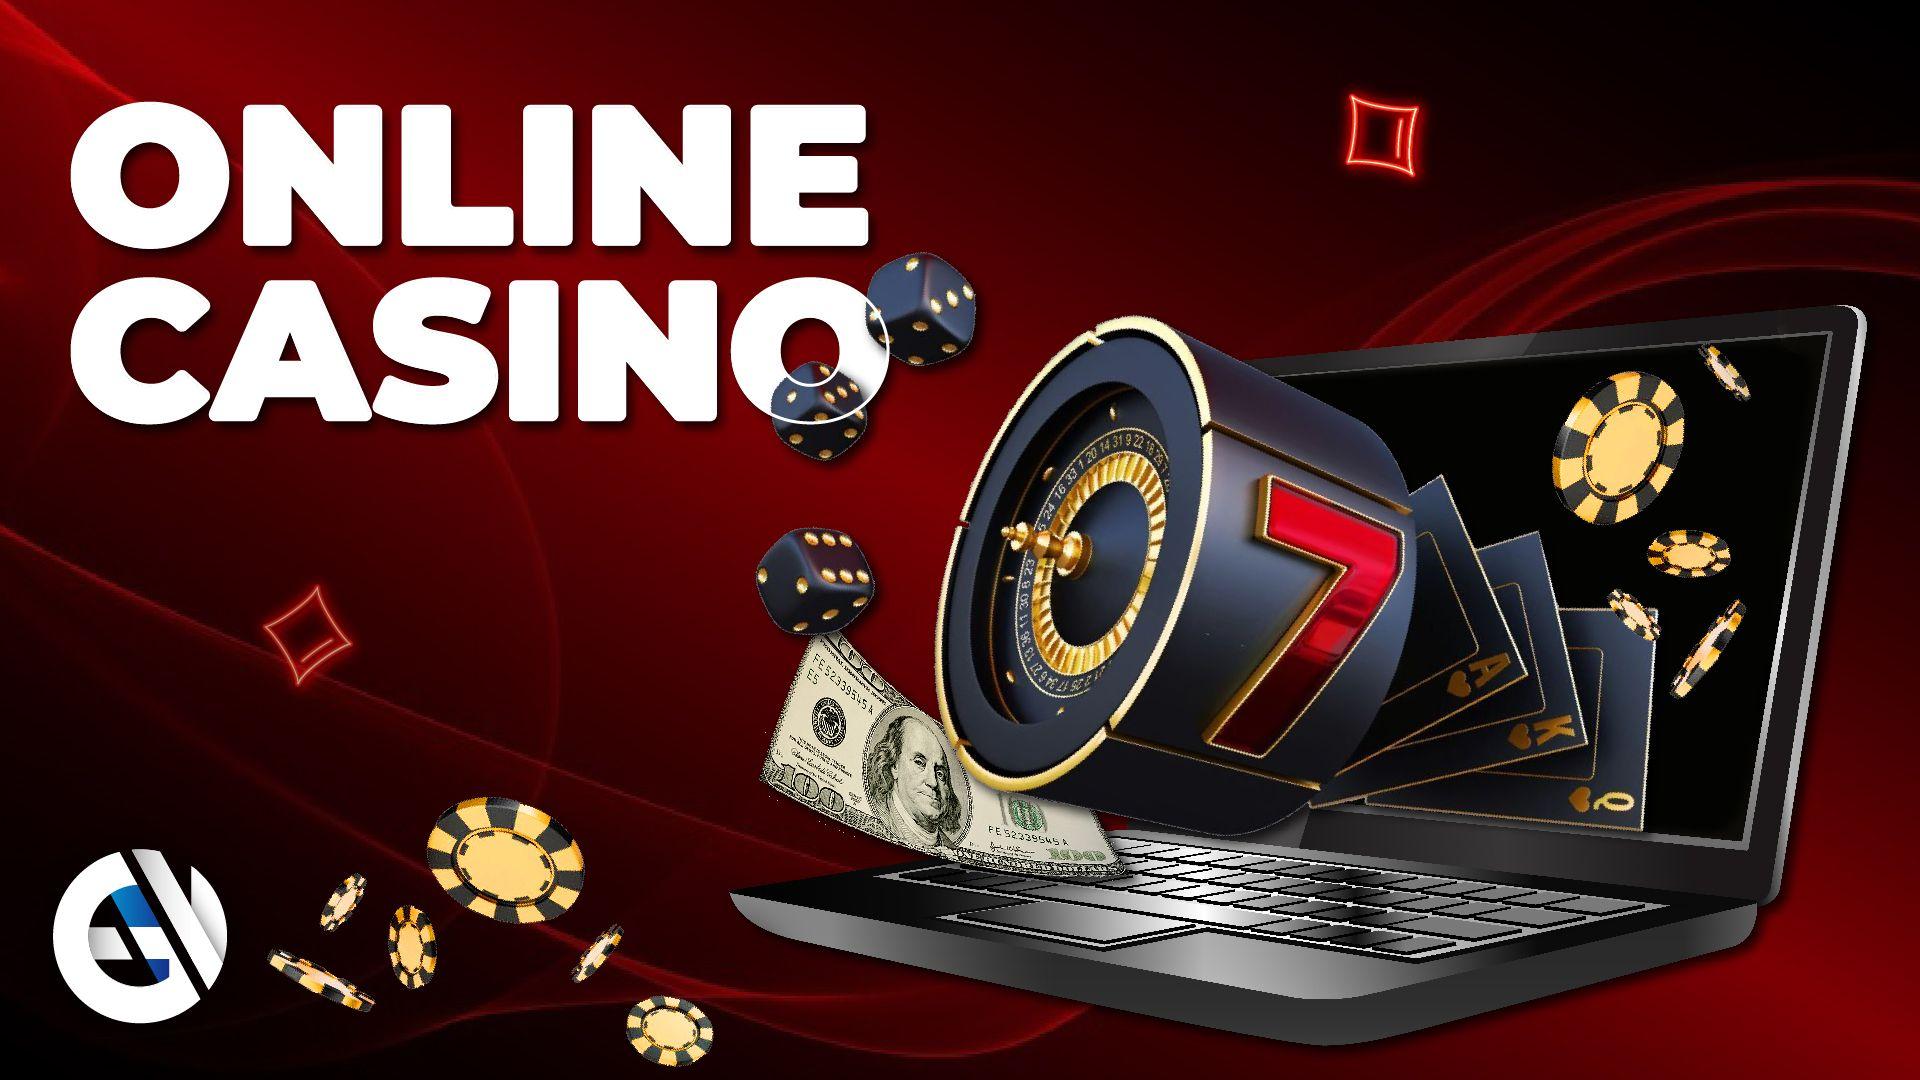 Qué casinos en línea son los más populares entre los finlandeses